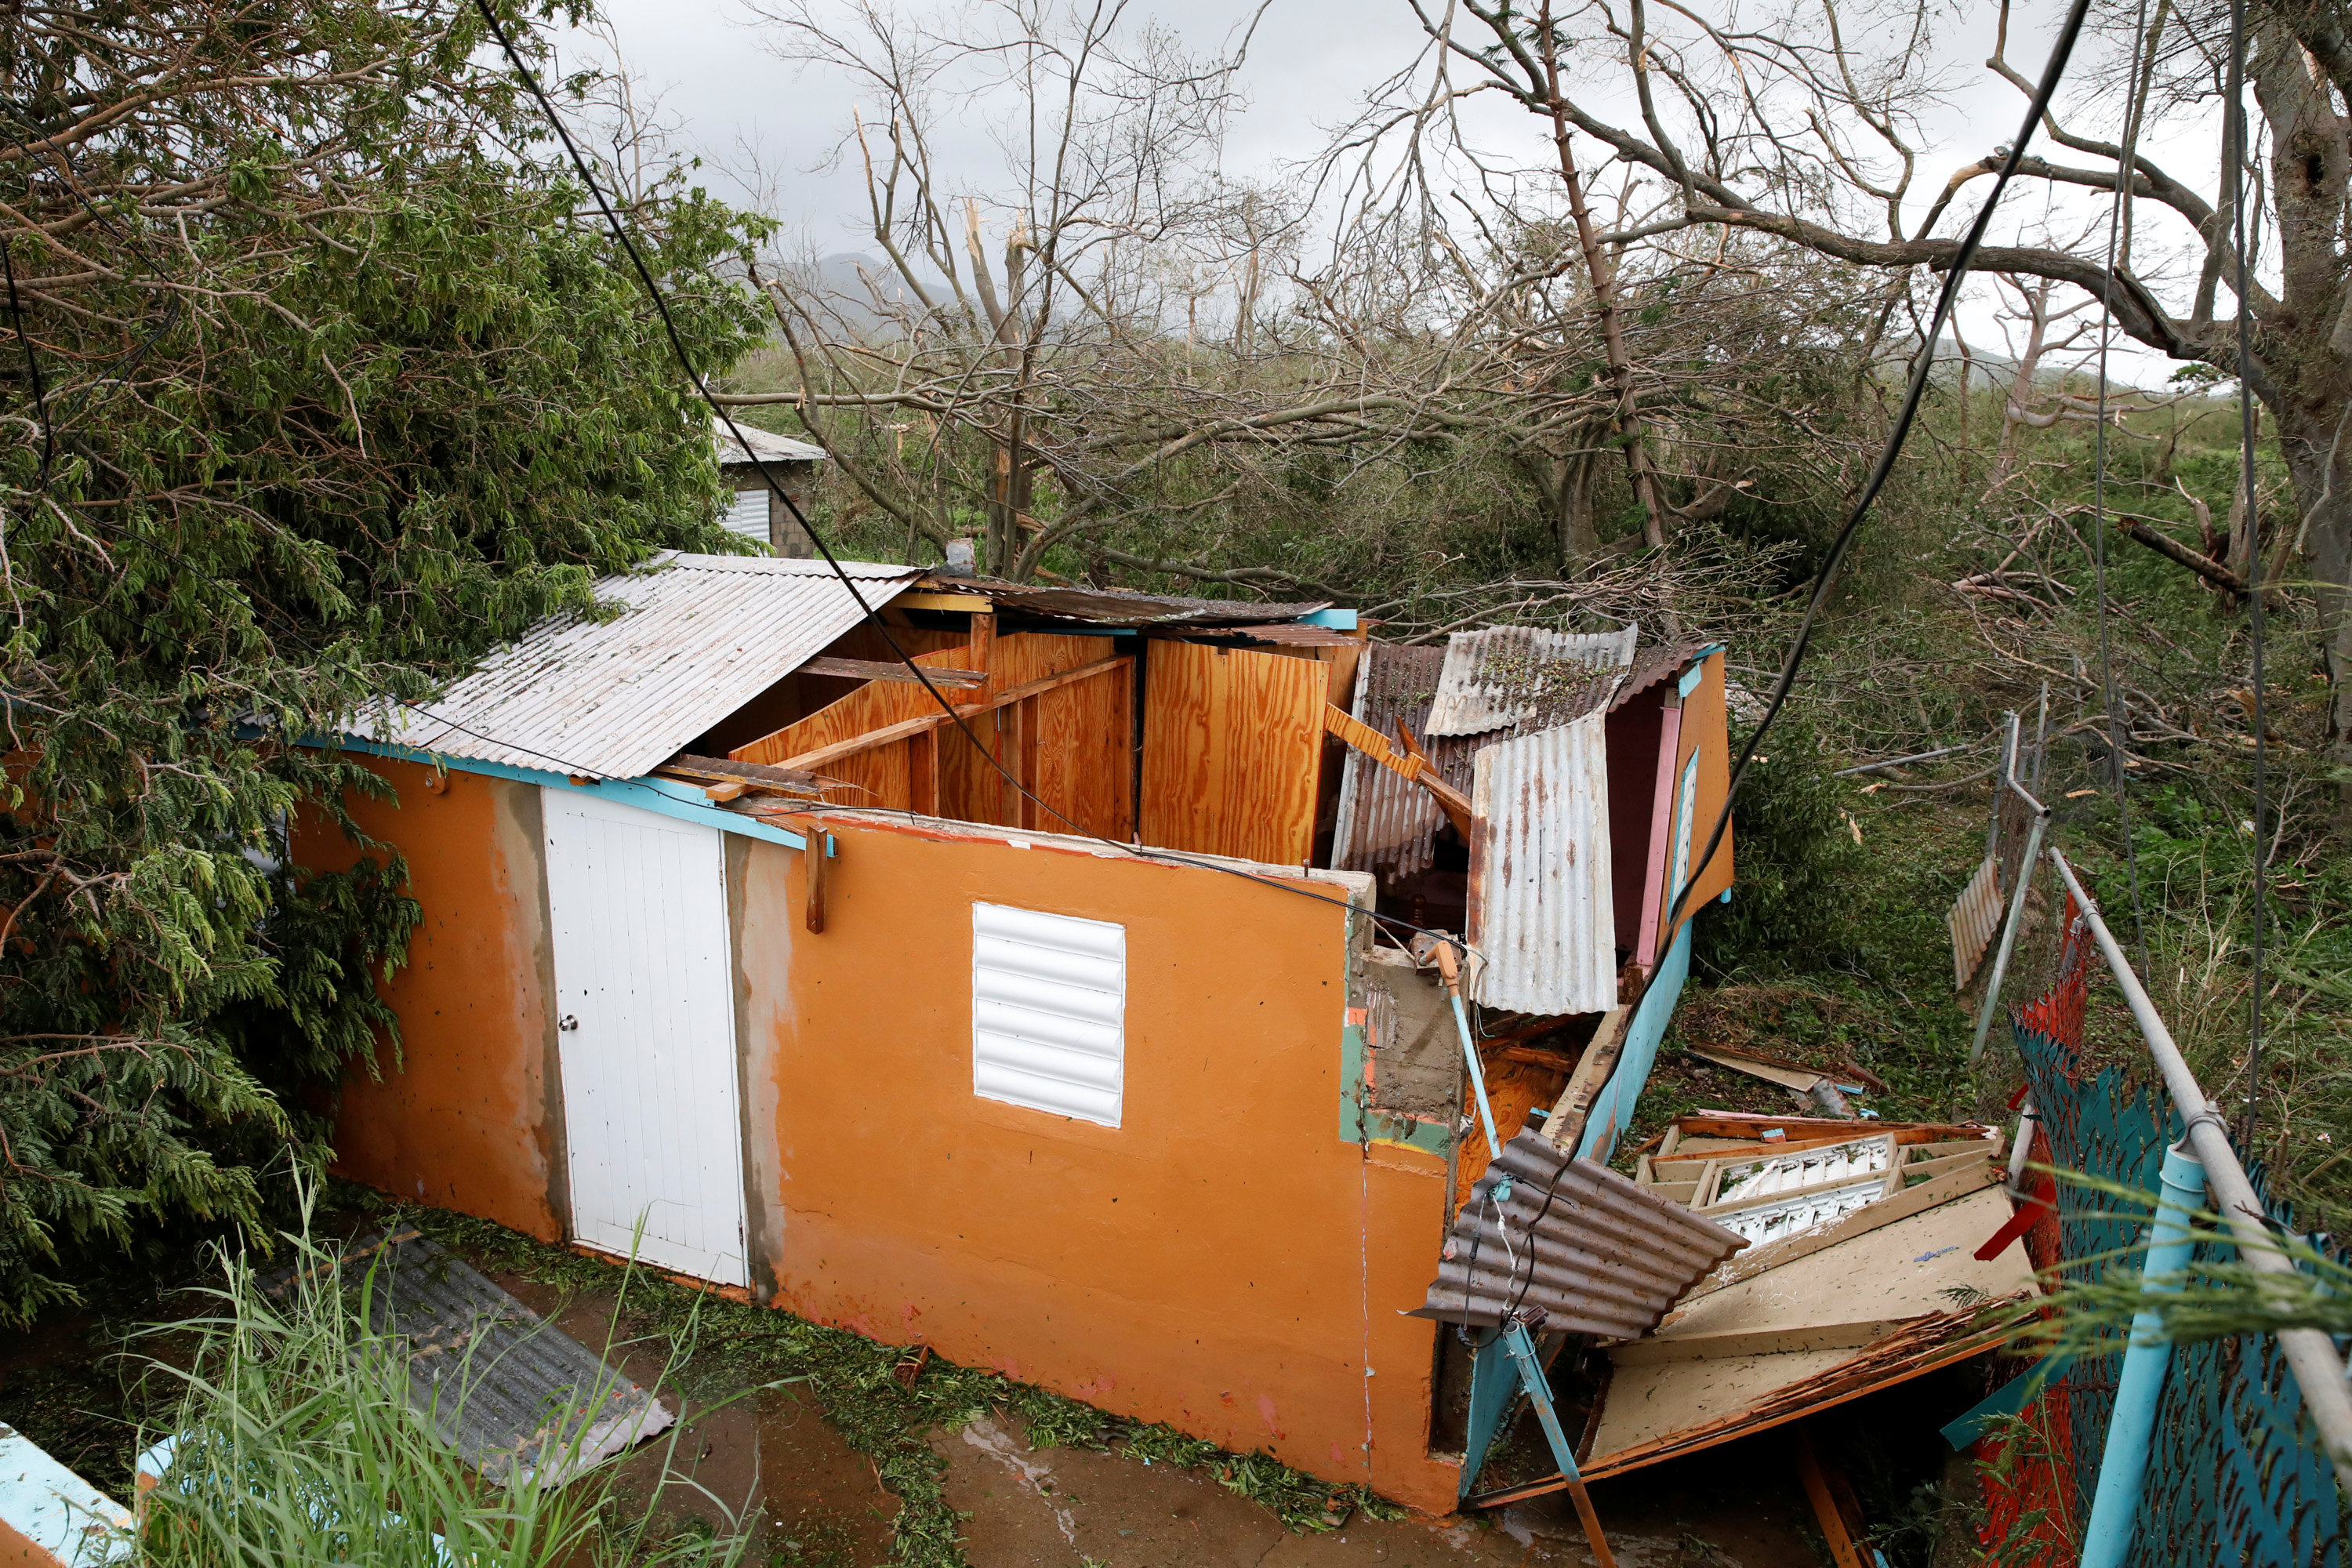 El pasó del huracán destechó muchas casas en Puerto Rico. (REUTERS/Carlos Garcia Rawlins)